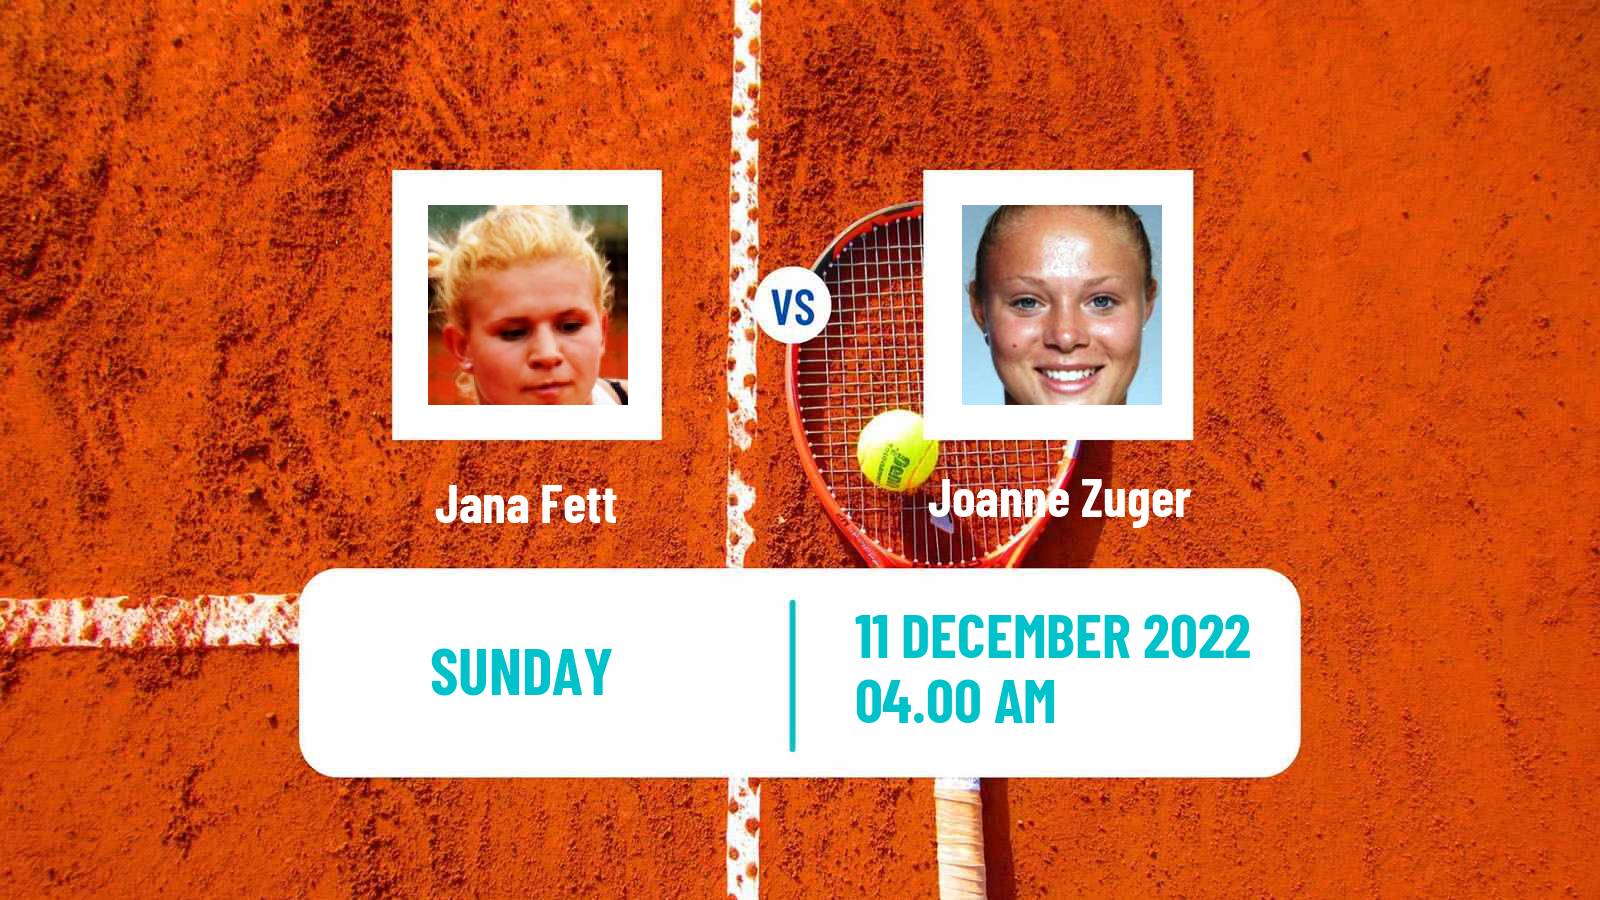 Tennis ATP Challenger Jana Fett - Joanne Zuger